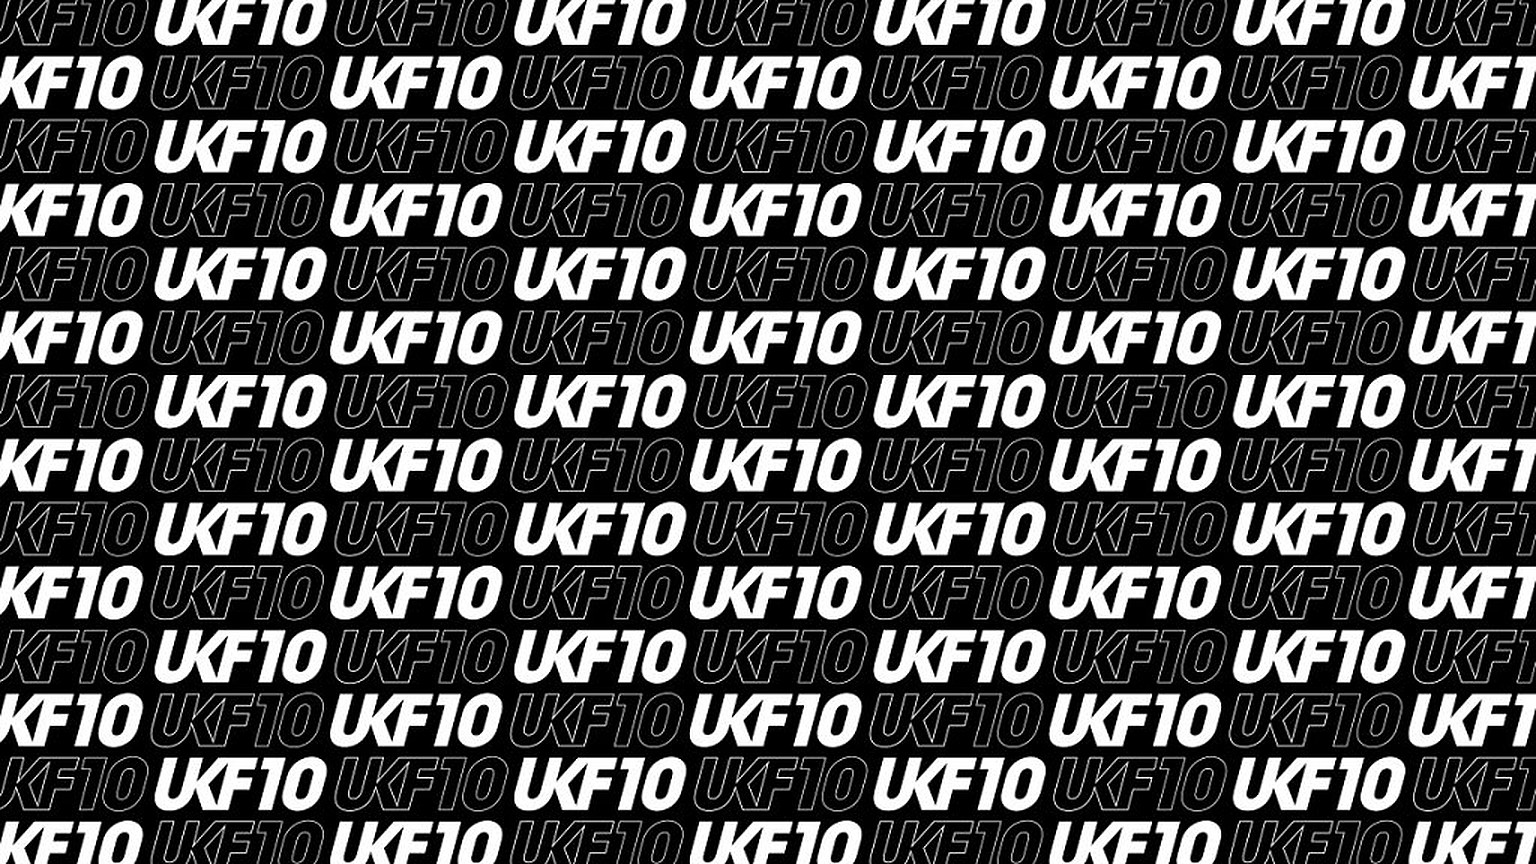 UKF10